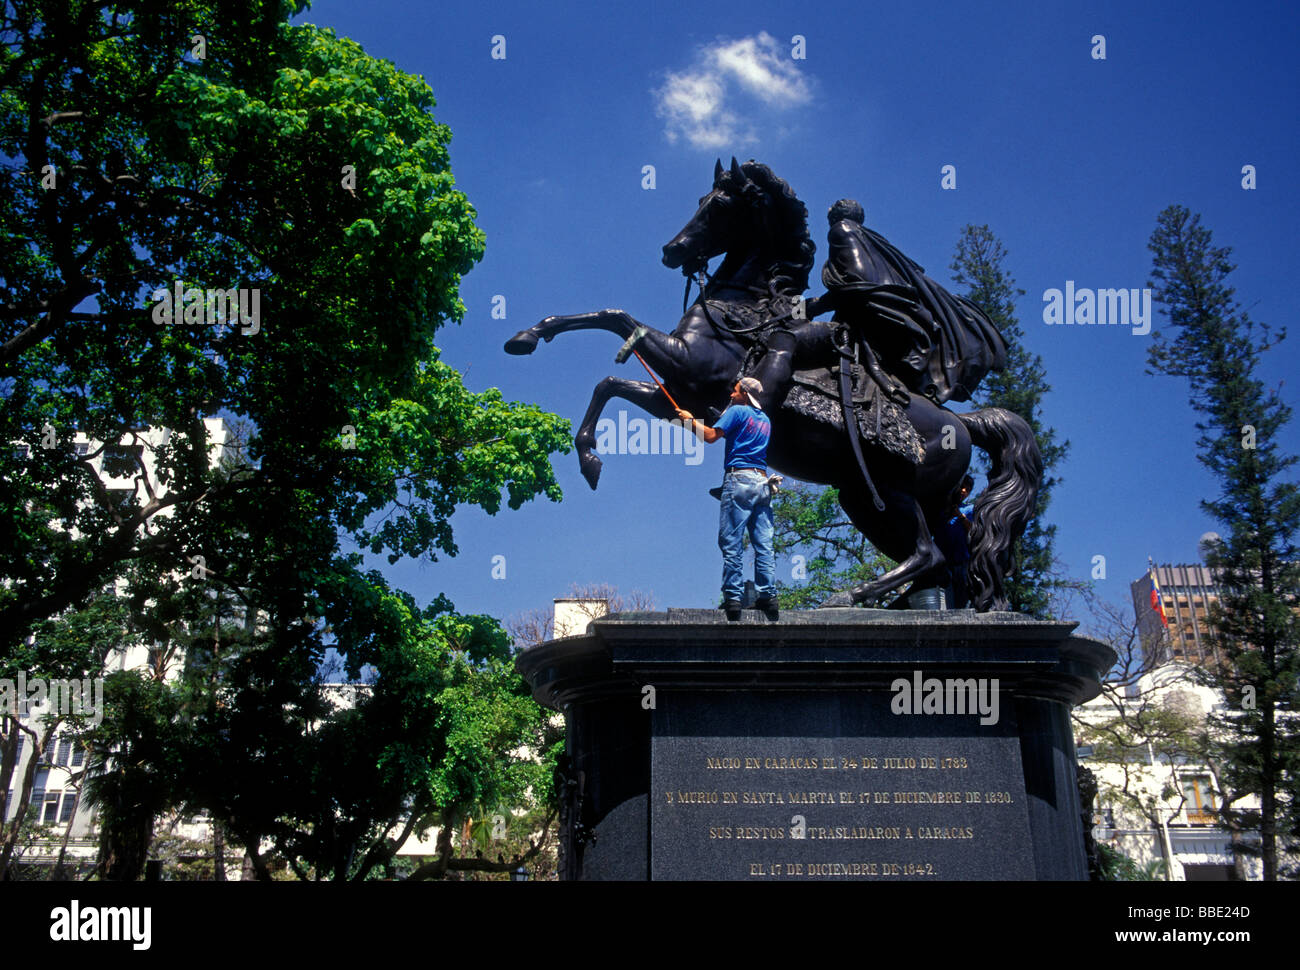 Venezuelan man, washing, cleaning, equestrian statue, statue of Simon Bolivar, Simon Bolivar, Plaza Bolivar, city of Caracas, Venezuela Stock Photo